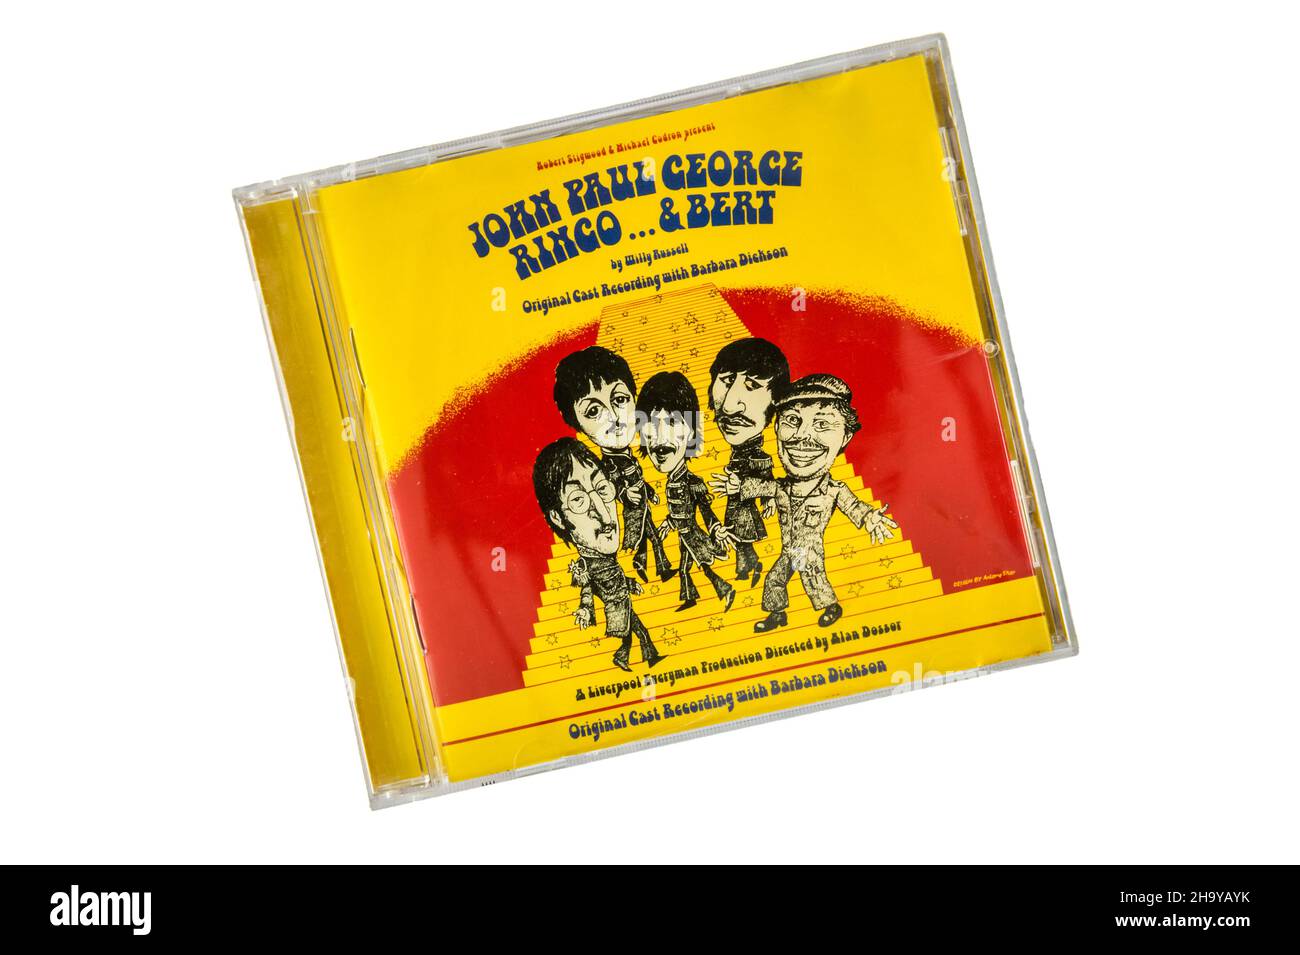 CD original de John Paul George Ringo ...Et Bert la comédie musicale 1974 de Willy Russell basée sur l'histoire des Beatles.Conception de la couverture par Antony Sher Banque D'Images